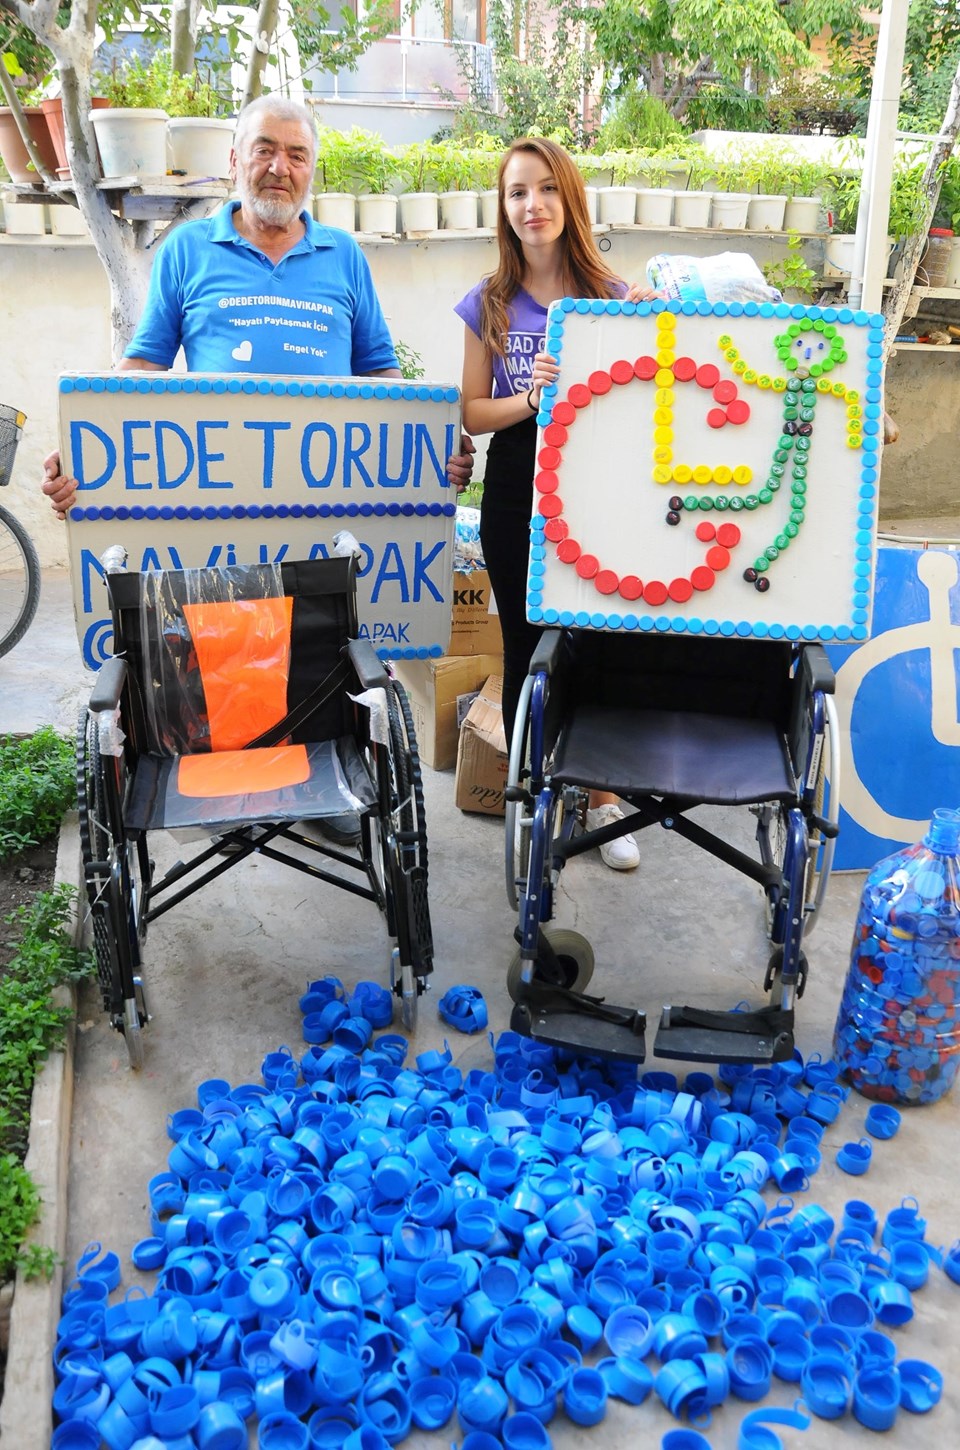 Dede torun 43 ton mavi kapak topladı, 137 tekerlekli sandalye aldı - 1